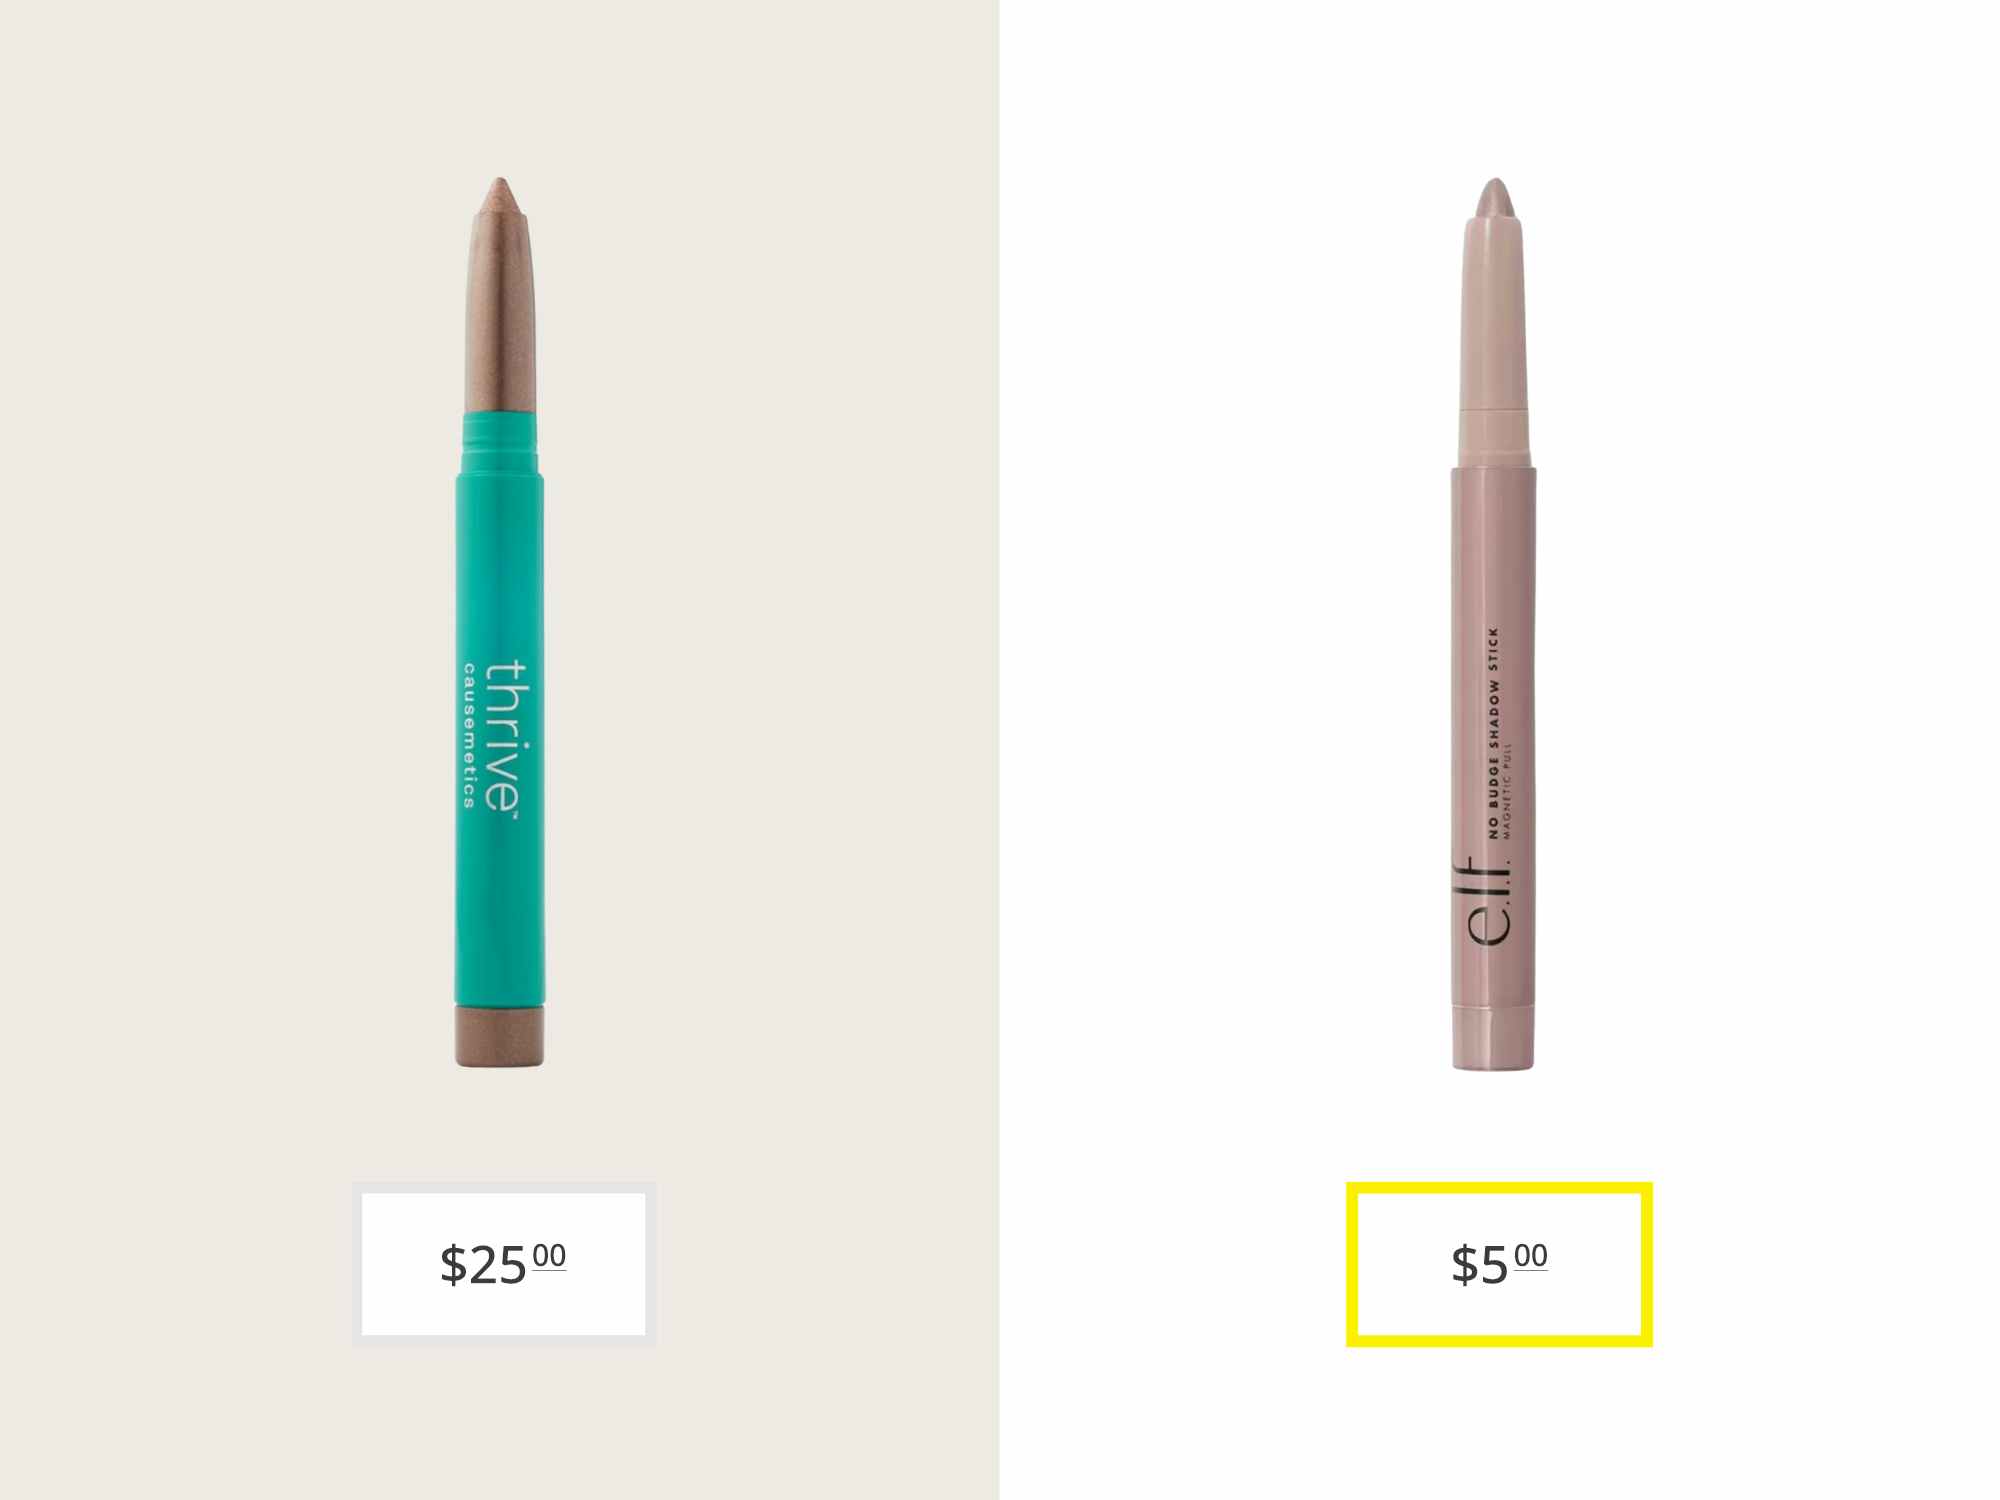 thrive cosmetics brillian eye brightener and e.l.f. cosmetics no budge shadow stick price comparison graphic